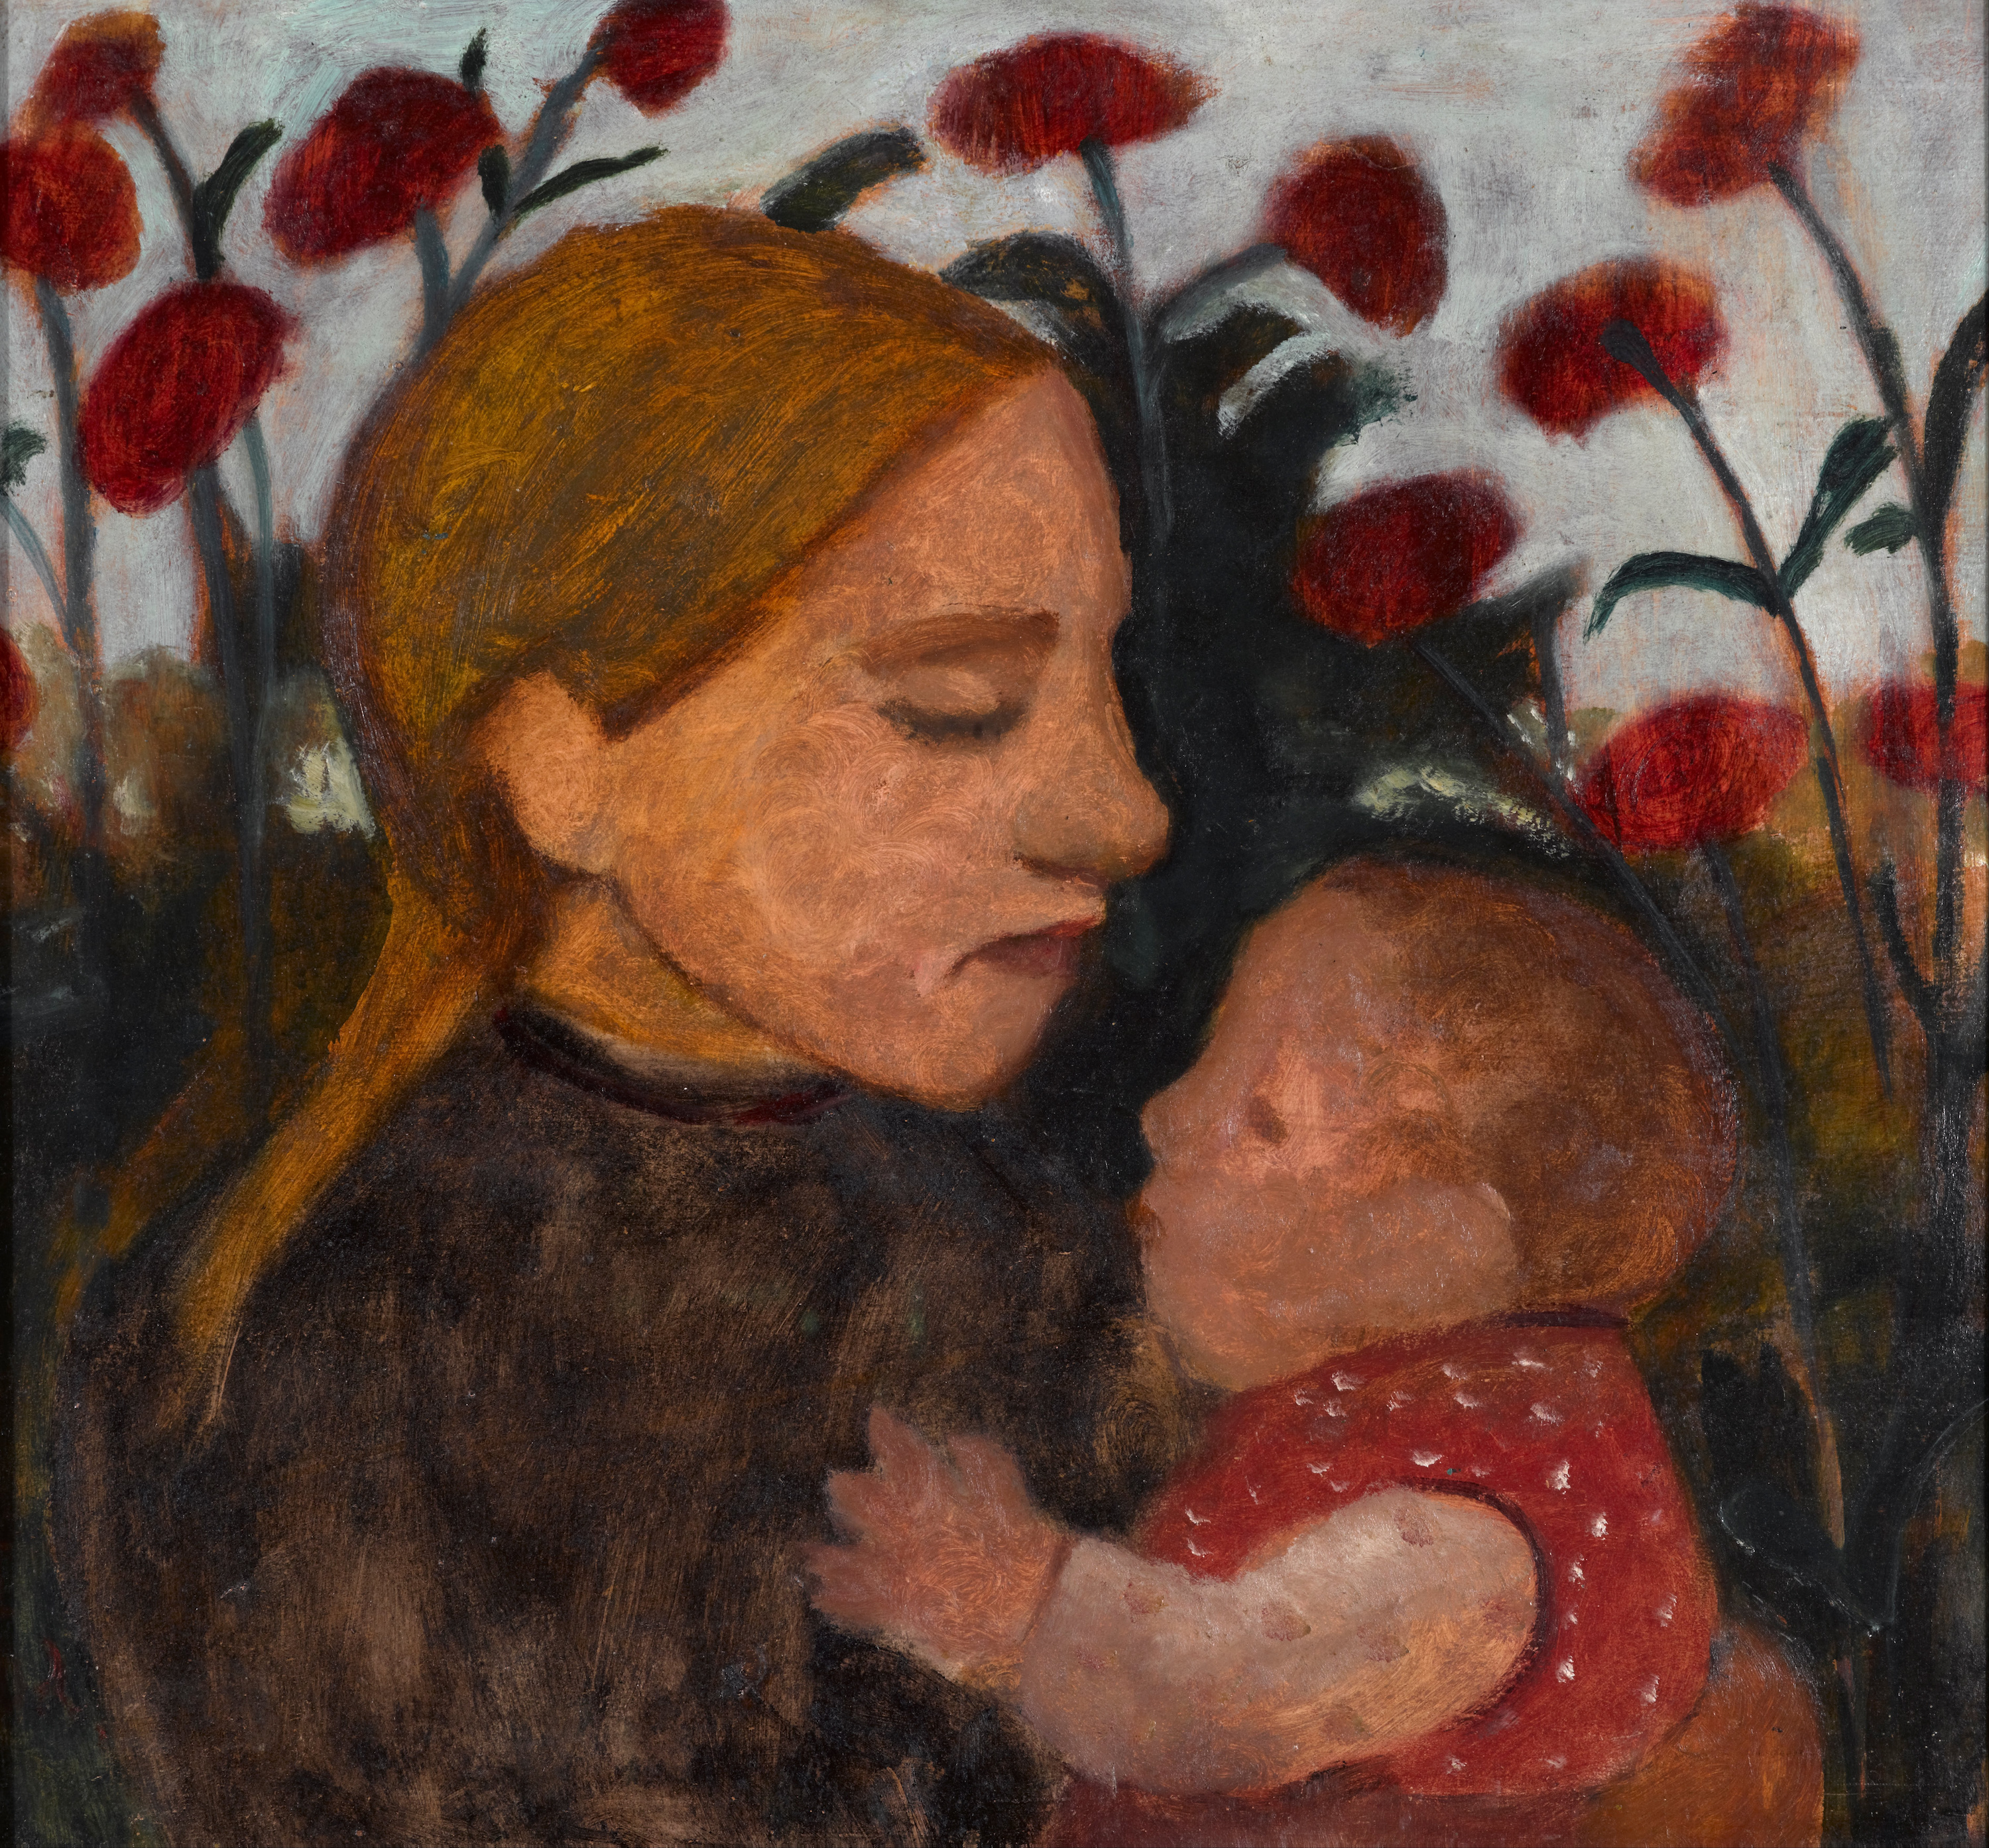 Rapariga e Criança by Paula Modersohn-Becker - 1902 